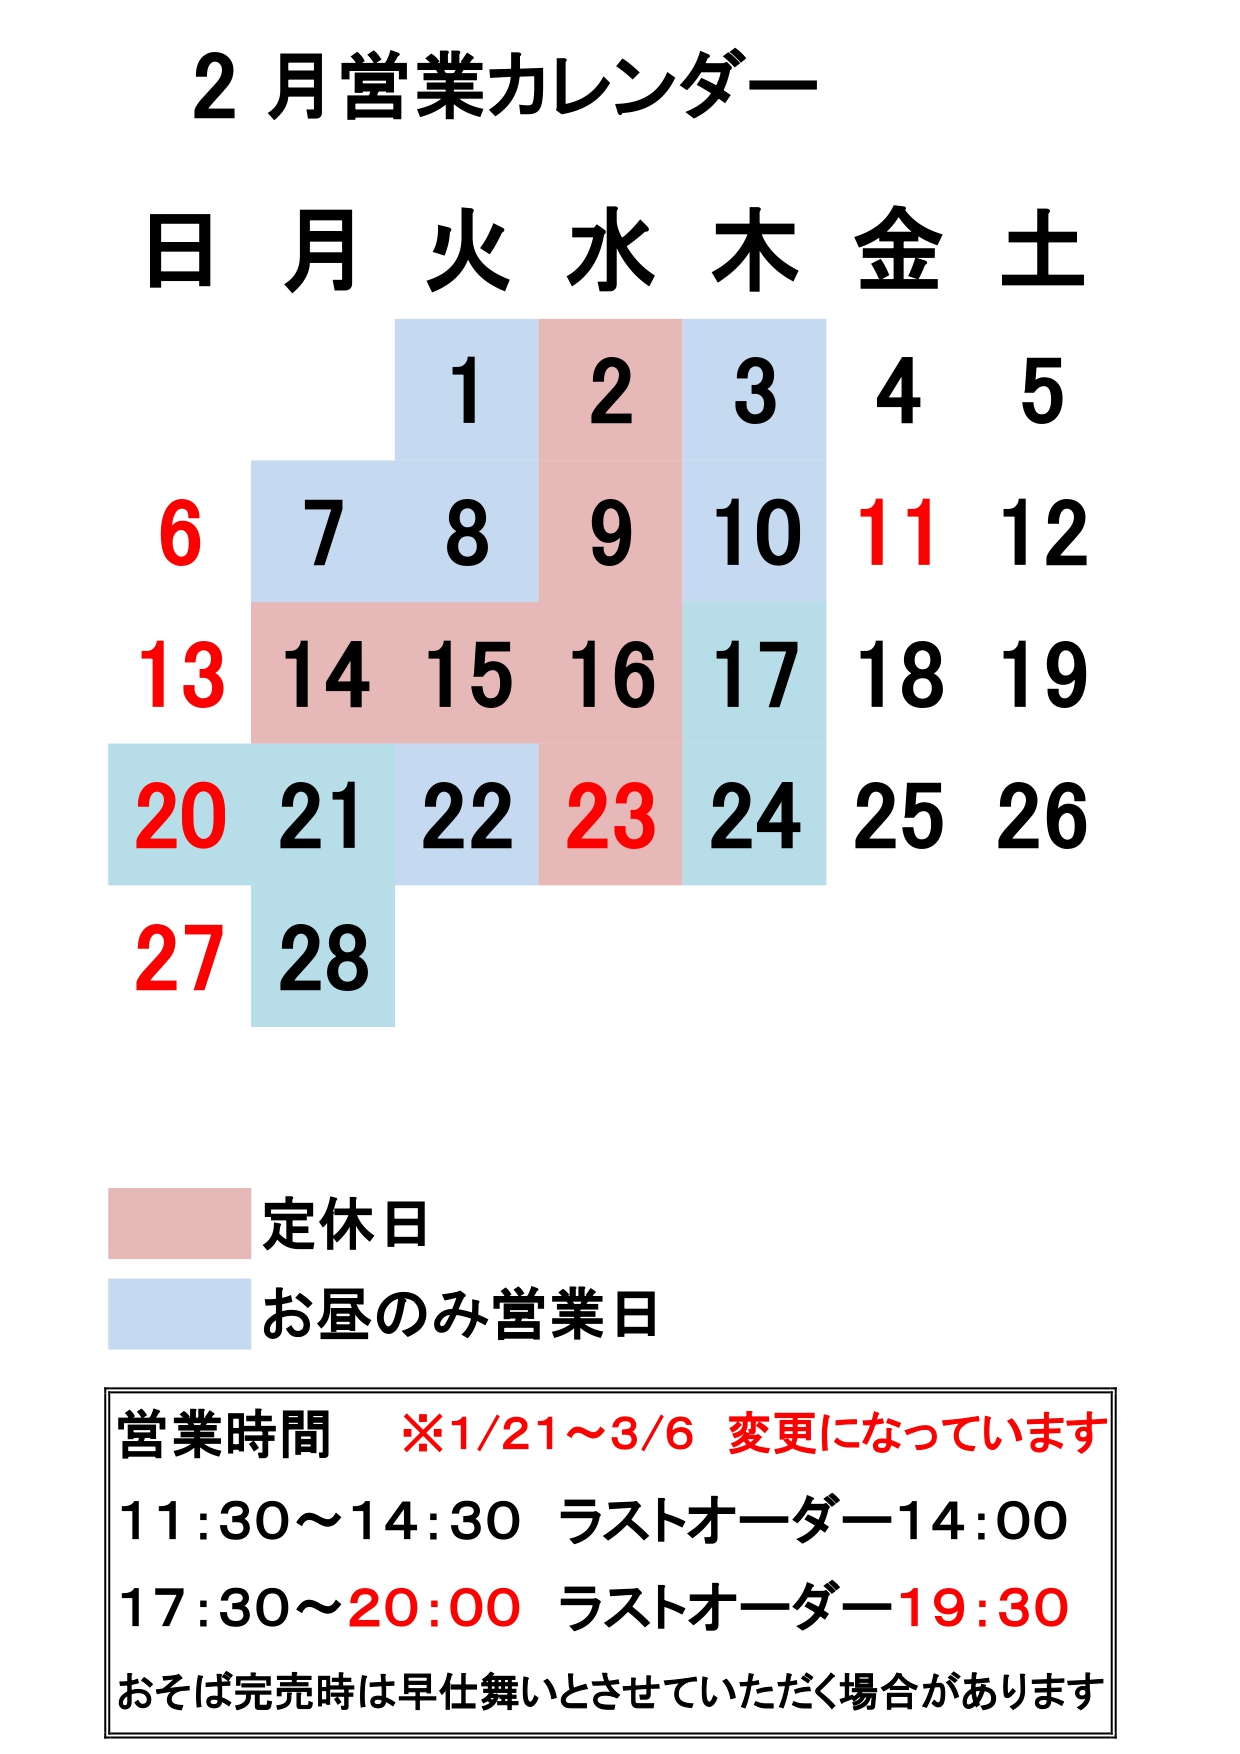 営業カレンダー_page-0001 (3).jpg